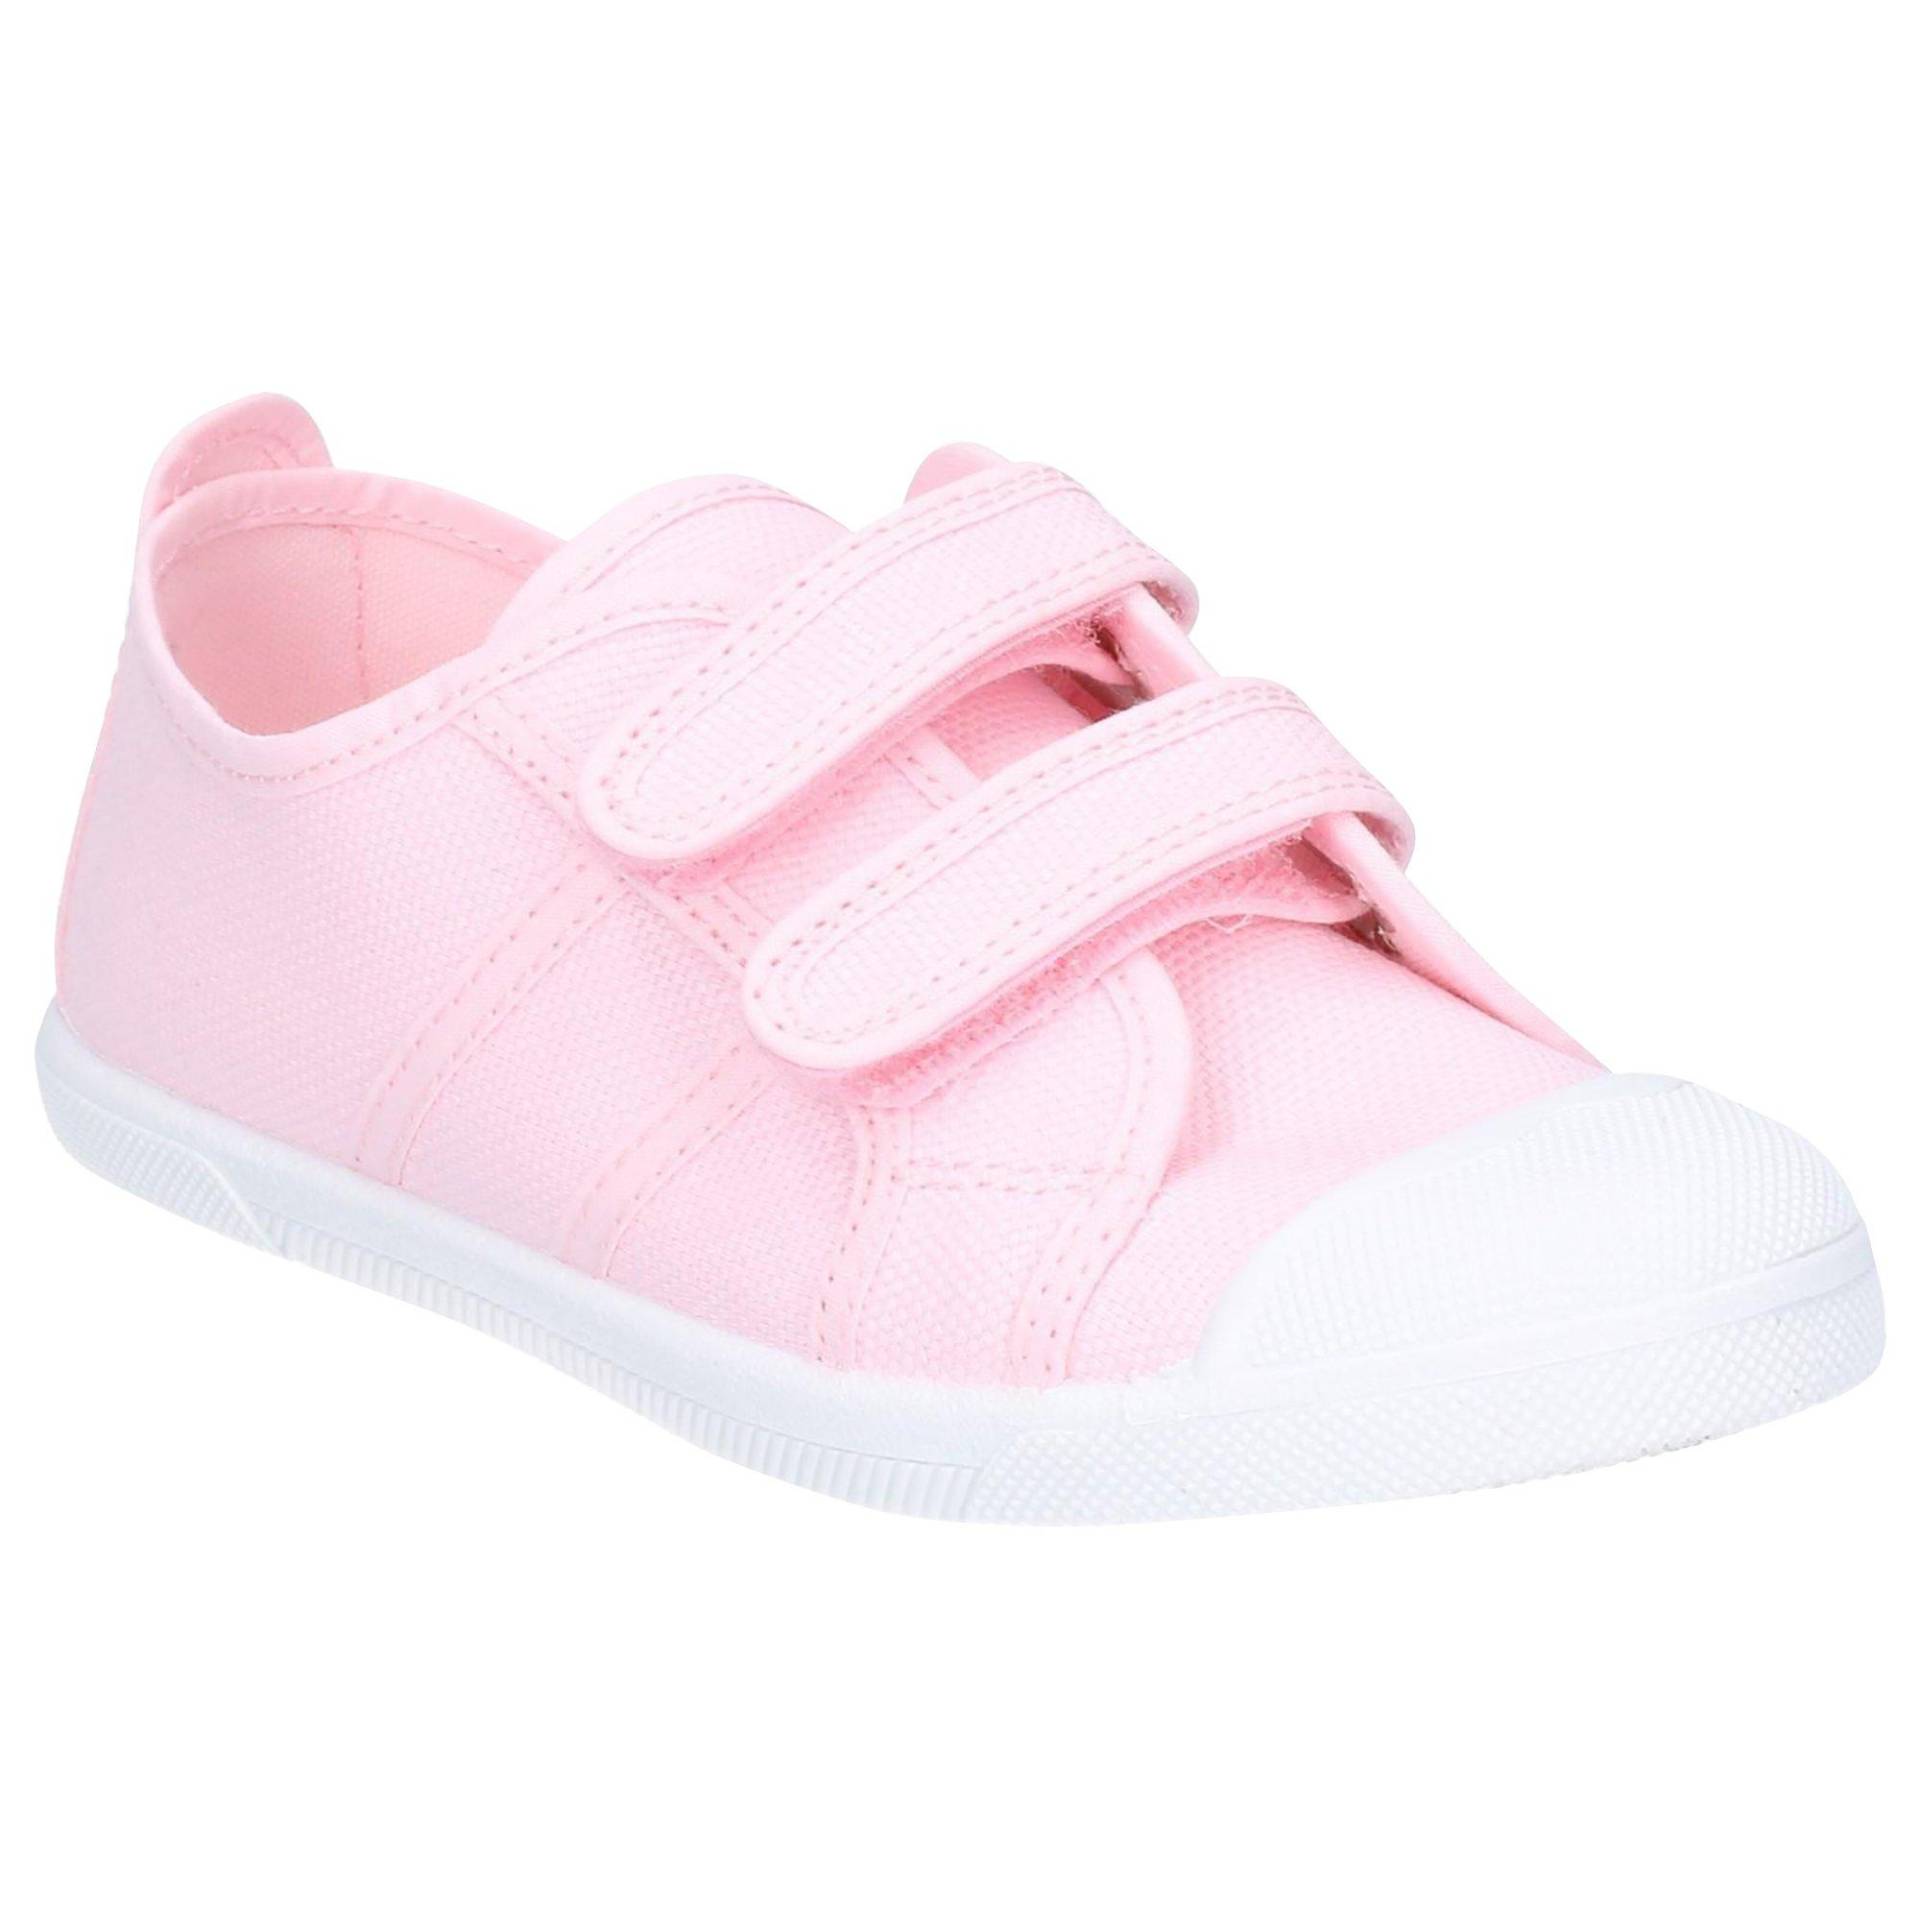 Schuhe Sasha Unisex Pink 25.5 von Flossy